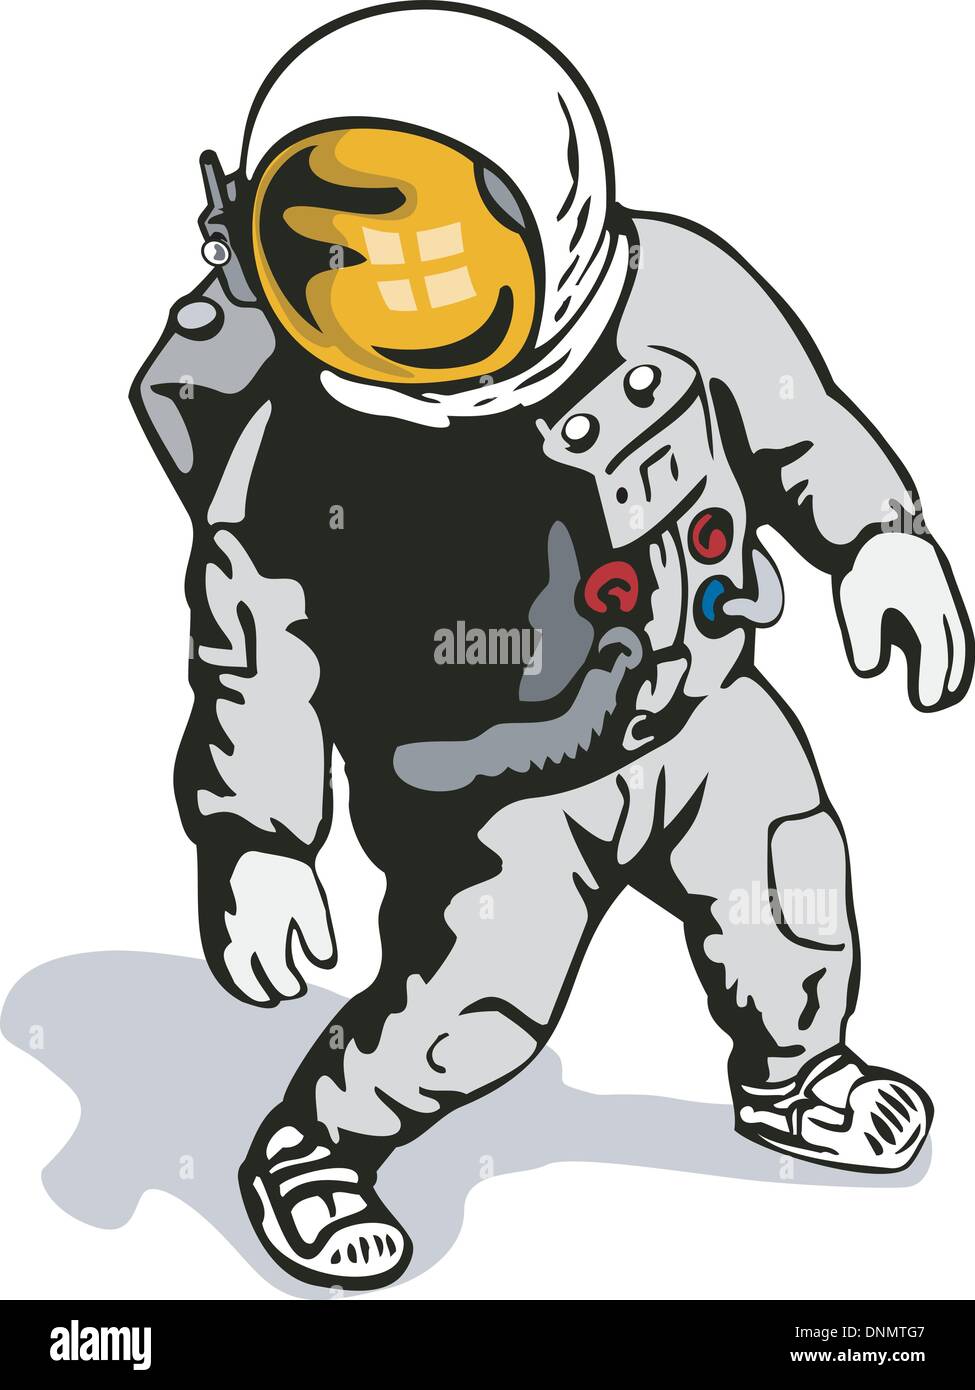 Abbildung eines Astronauten im retro-Stil gemacht. Stock Vektor